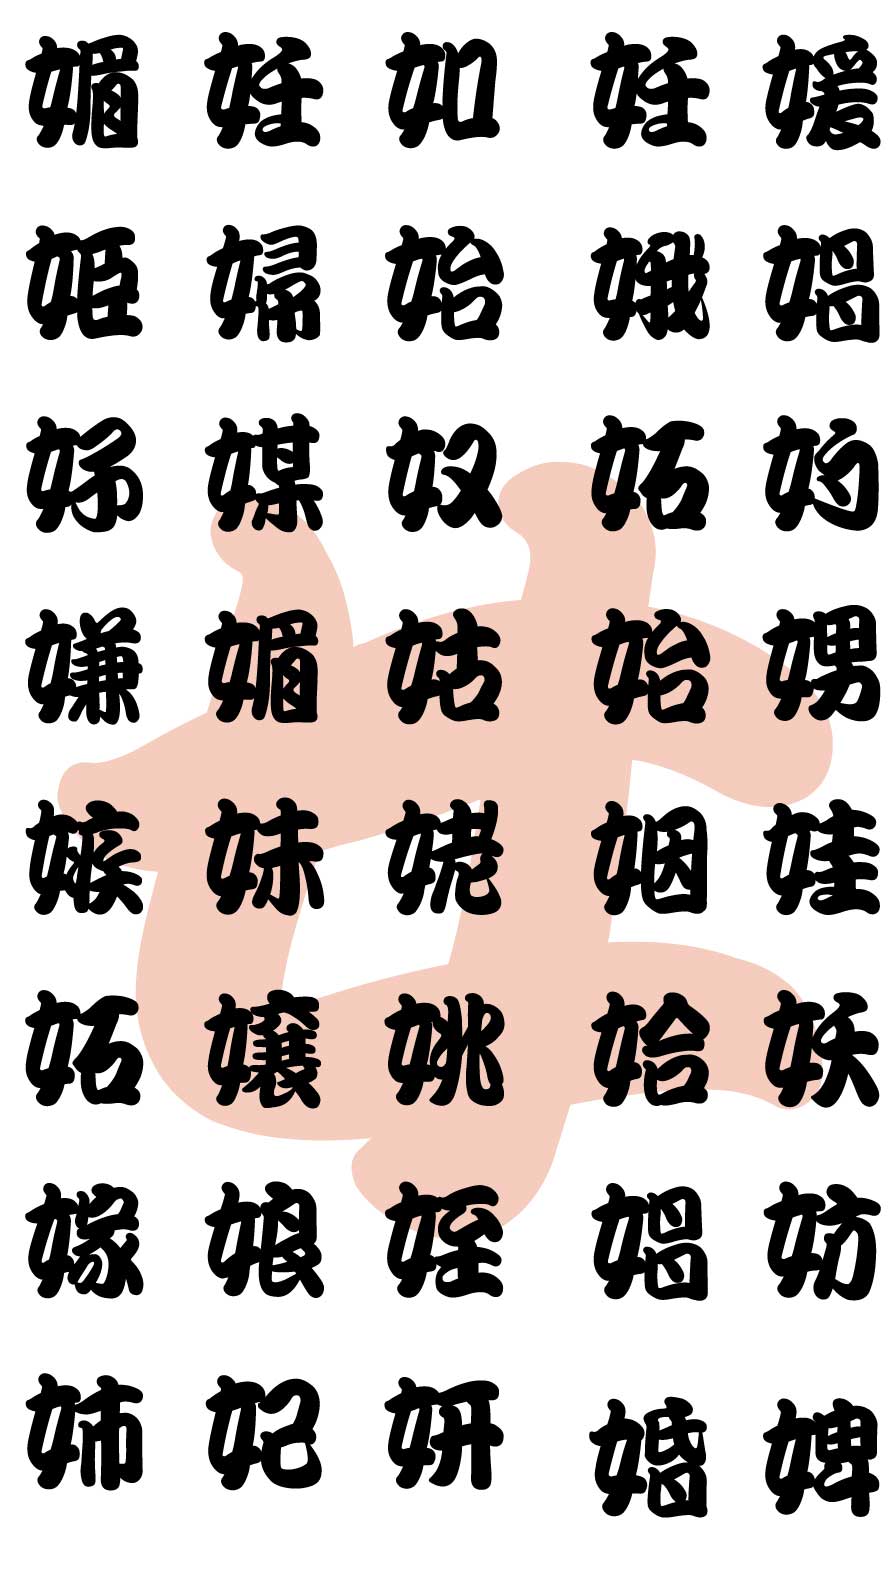 エロ注意 超恥ずかしいジョーク壁紙 魚漢字湯のみ風の隠語漢字の待ち